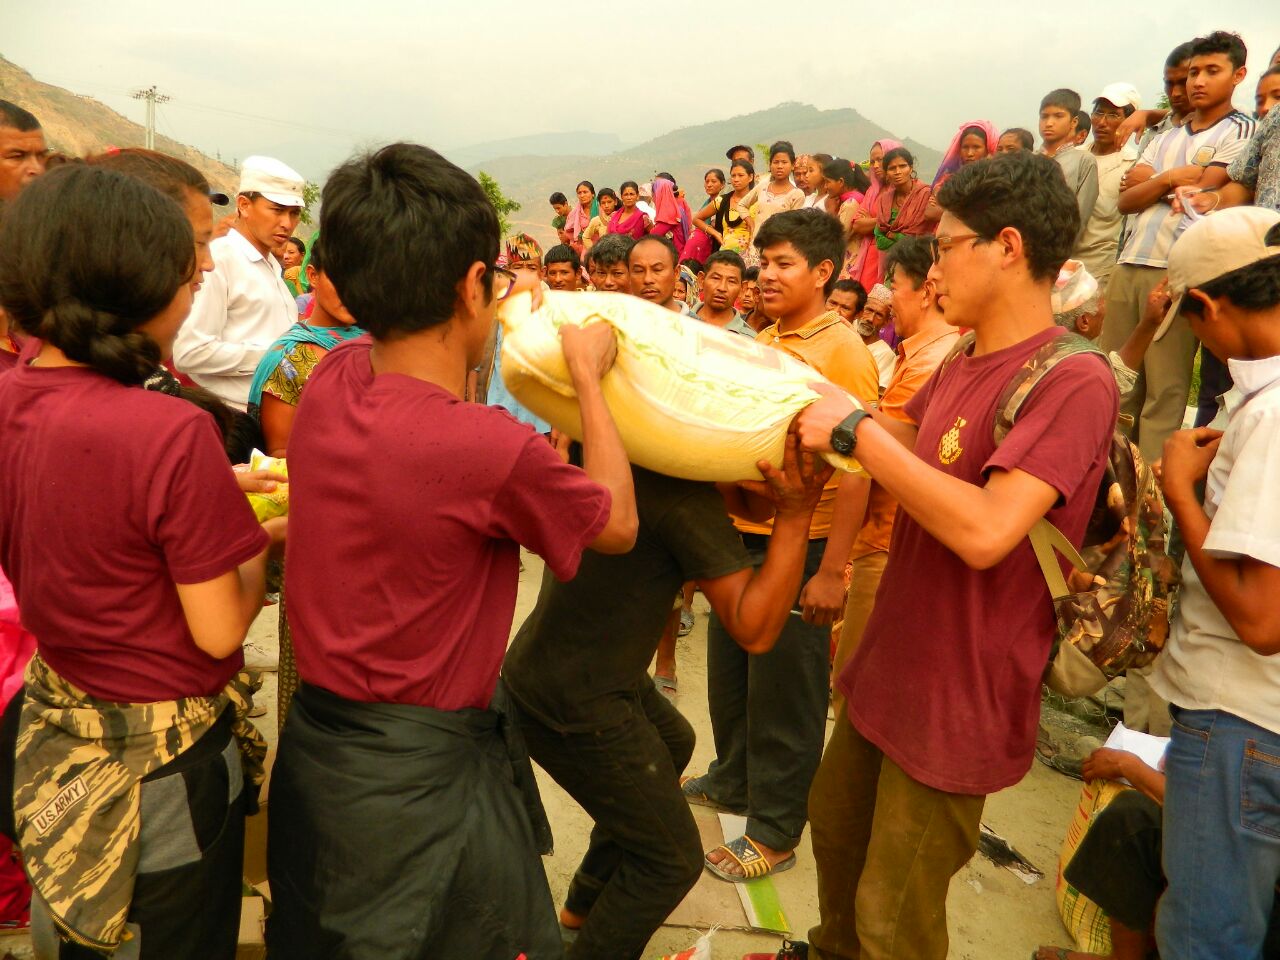 Emergenza Nepal - aggiornamento al 25 maggio - i ragazzi della Tashi Orphan School distribuiscono aiuti a 3.000 persone